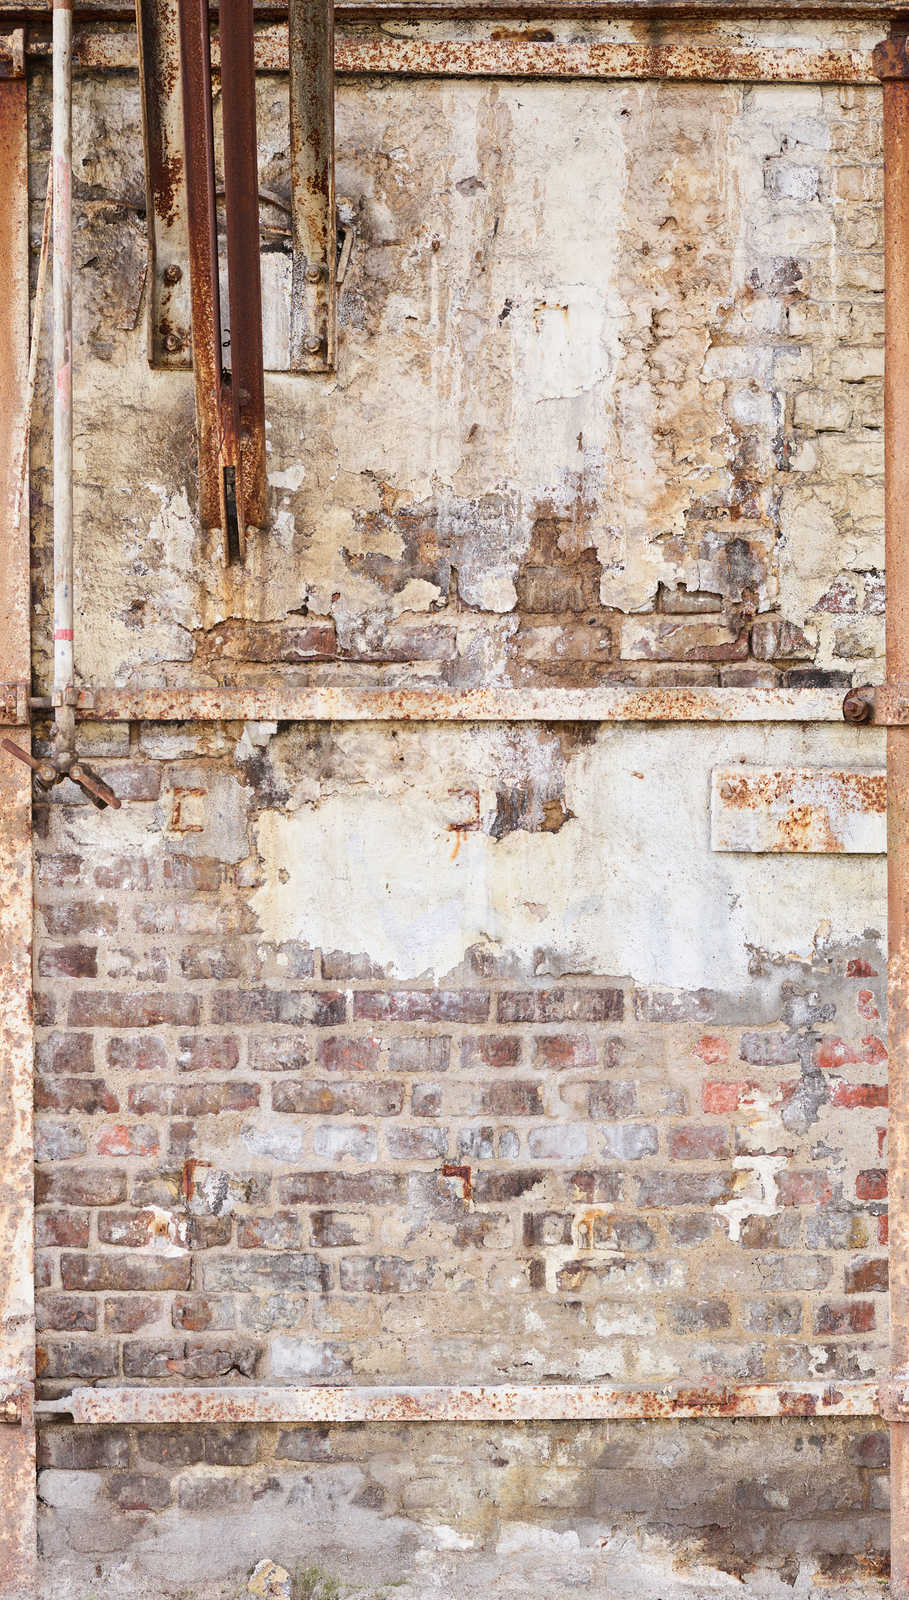             Papel pintado no tejido pared de ladrillo viejo con marco de metal oxidado - crema, marrón, beige
        